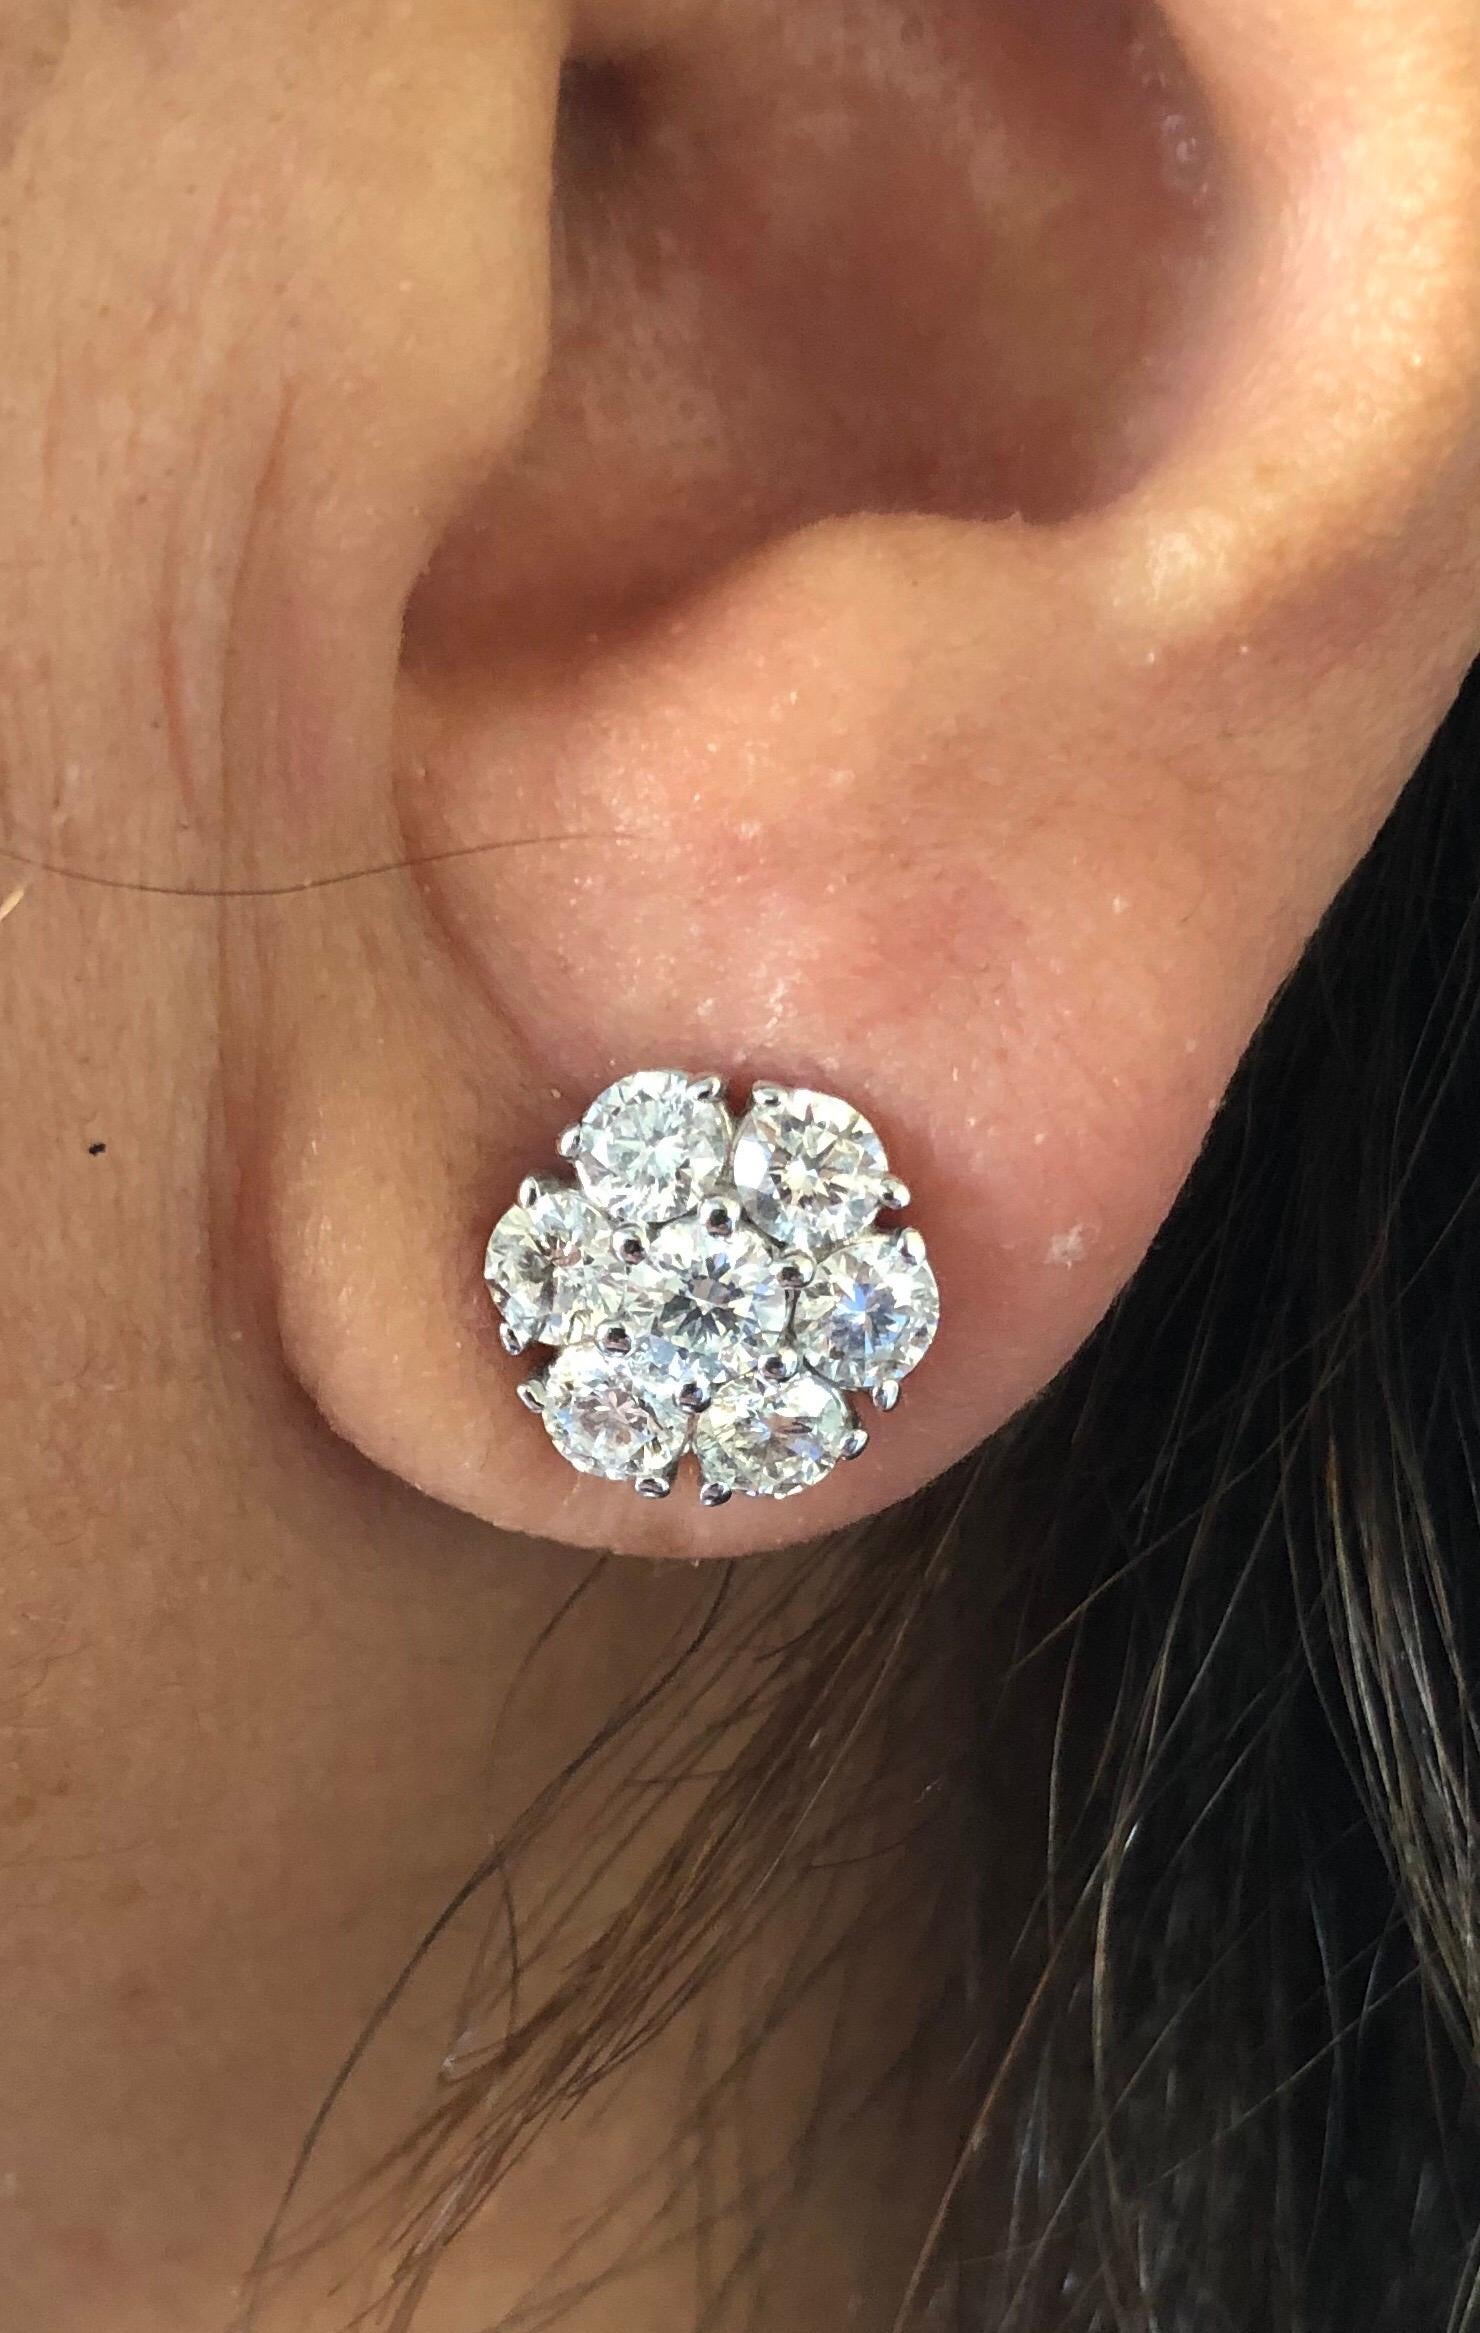 Diamant-Ohrringe in Blumenform, gefasst in 14 Karat Weißgold. Die Ohrringe sind mit 14 Diamanten von je 0,25 Karat besetzt. Das Gesamtgewicht der Ohrringe beträgt 3,50 Karat. Die Farbe der Steine ist G-H, die Reinheit ist SI. Die Ohrringe sind in